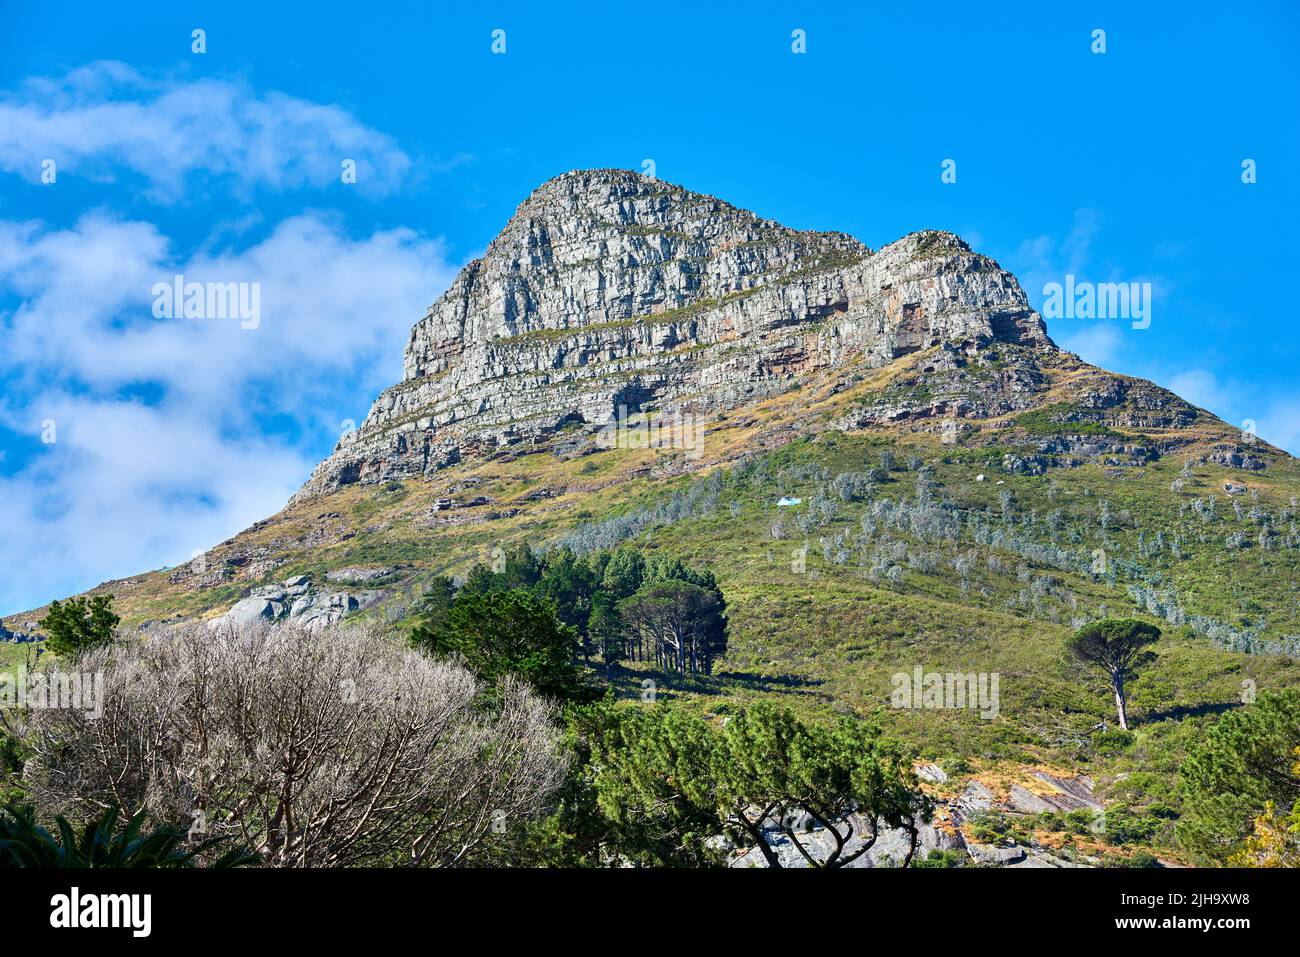 Kopieren Sie den Raum mit einer landschaftlich reizvollen Aussicht auf den Lions Head Berg in Kapstadt, Südafrika, vor einem blauen Himmel. Herrlicher Panoramablick von einem Stockfoto